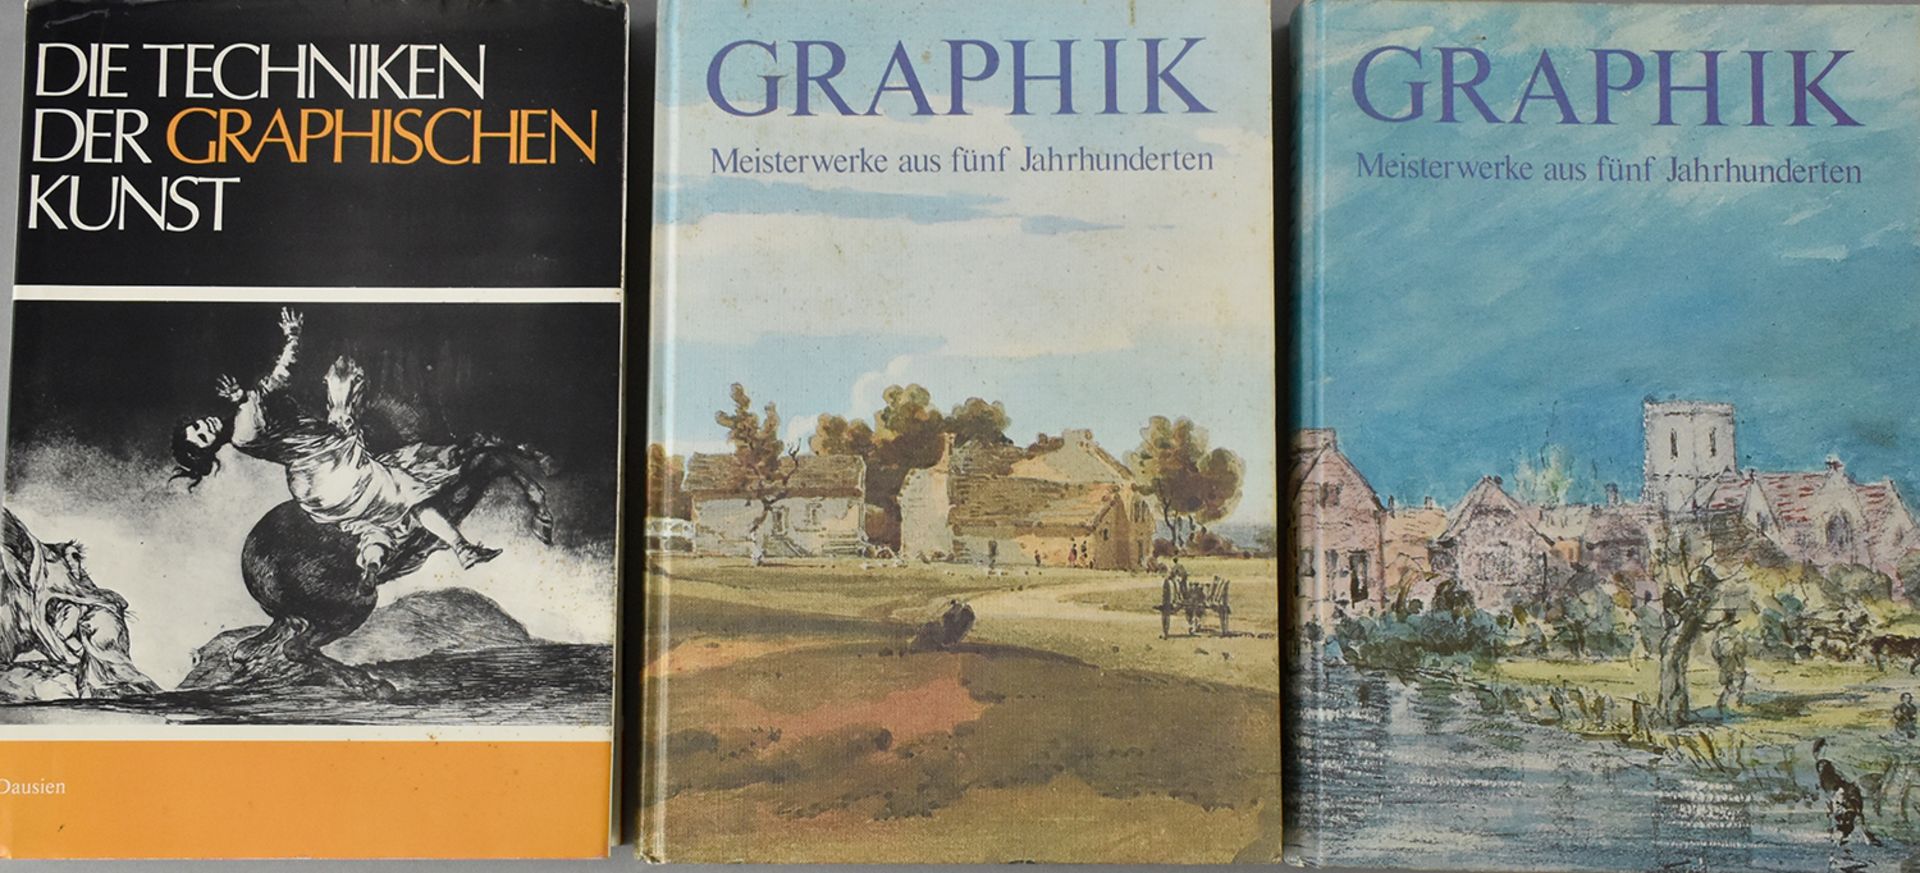 Lindemann, Gottfried. Graphik. Meisterwerke aus fünf Jahrhunderten.